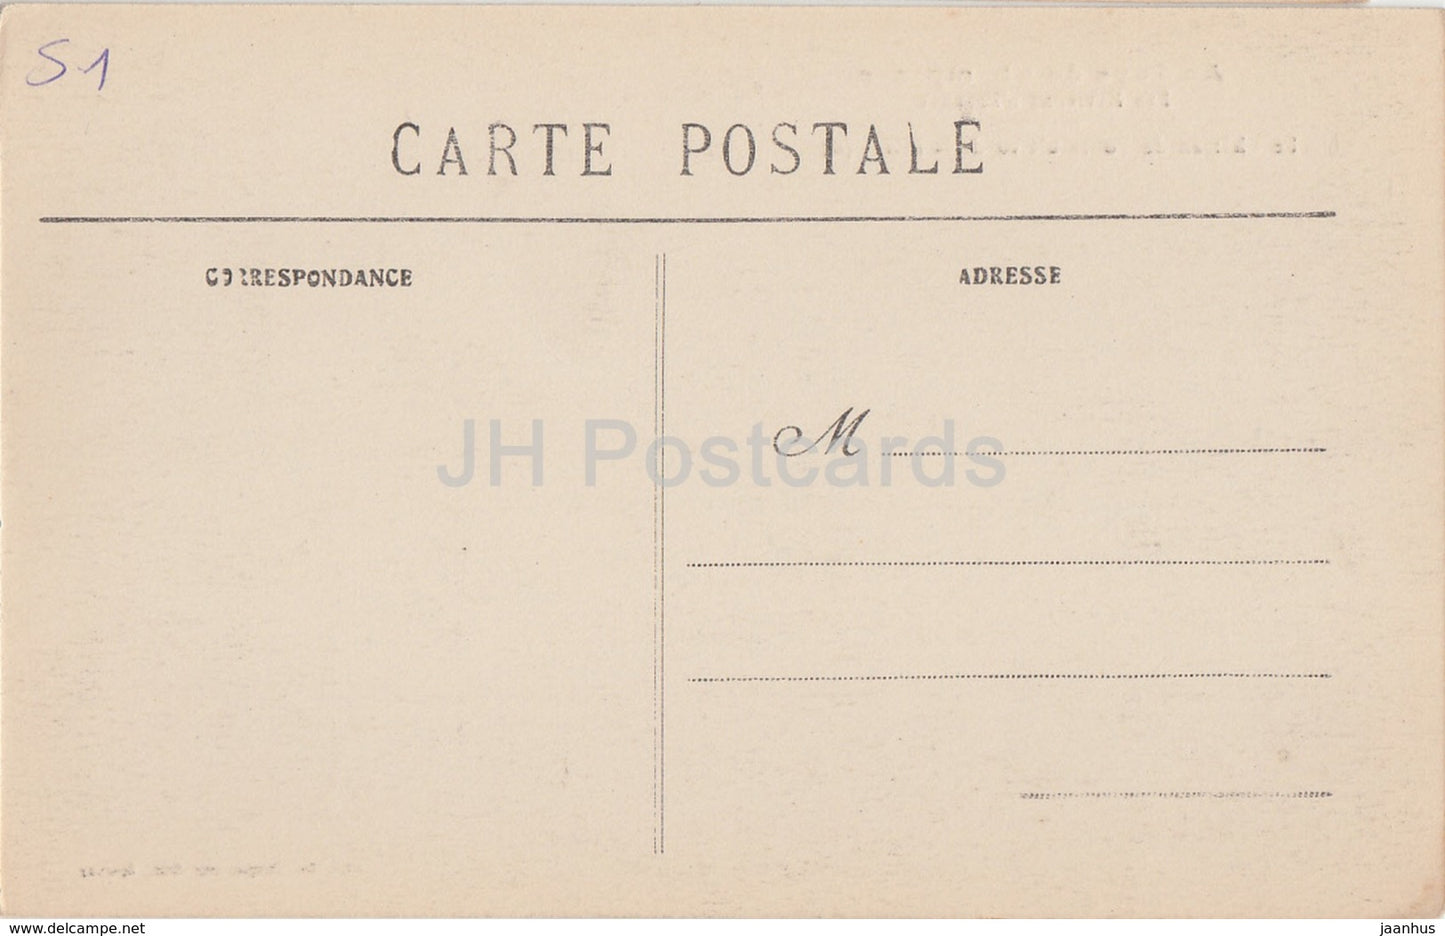 Le Chateau de Boursault vu de la Plaine - Au Pays du Champagne - castle - 65 - old postcard - France - unused